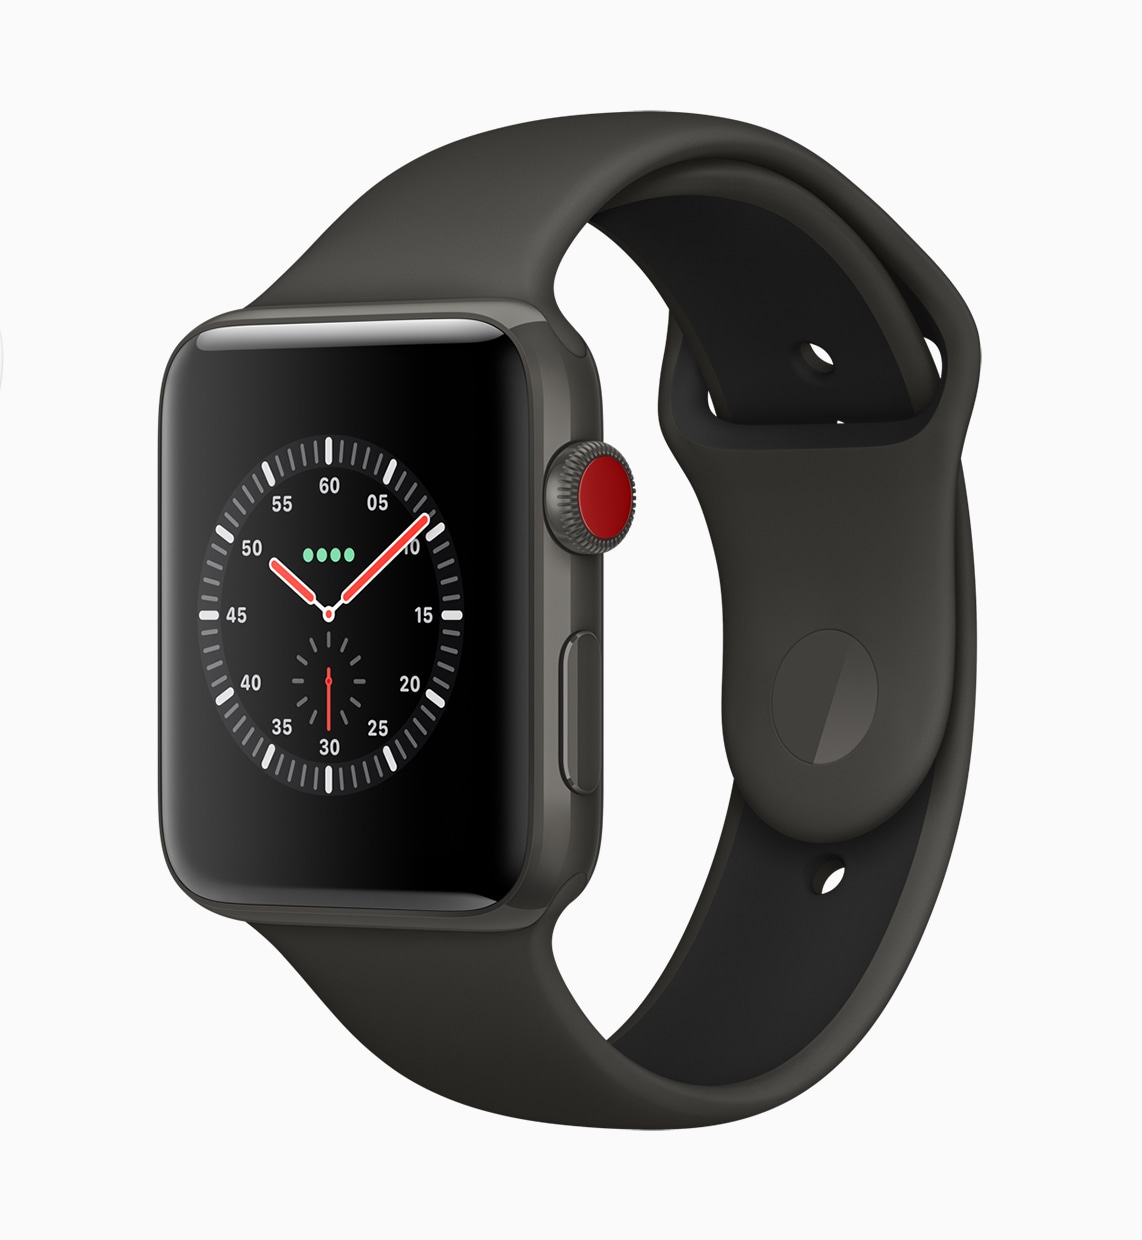 Apple Watch Series 3 com Digital Crown vermelha e conectividade celular